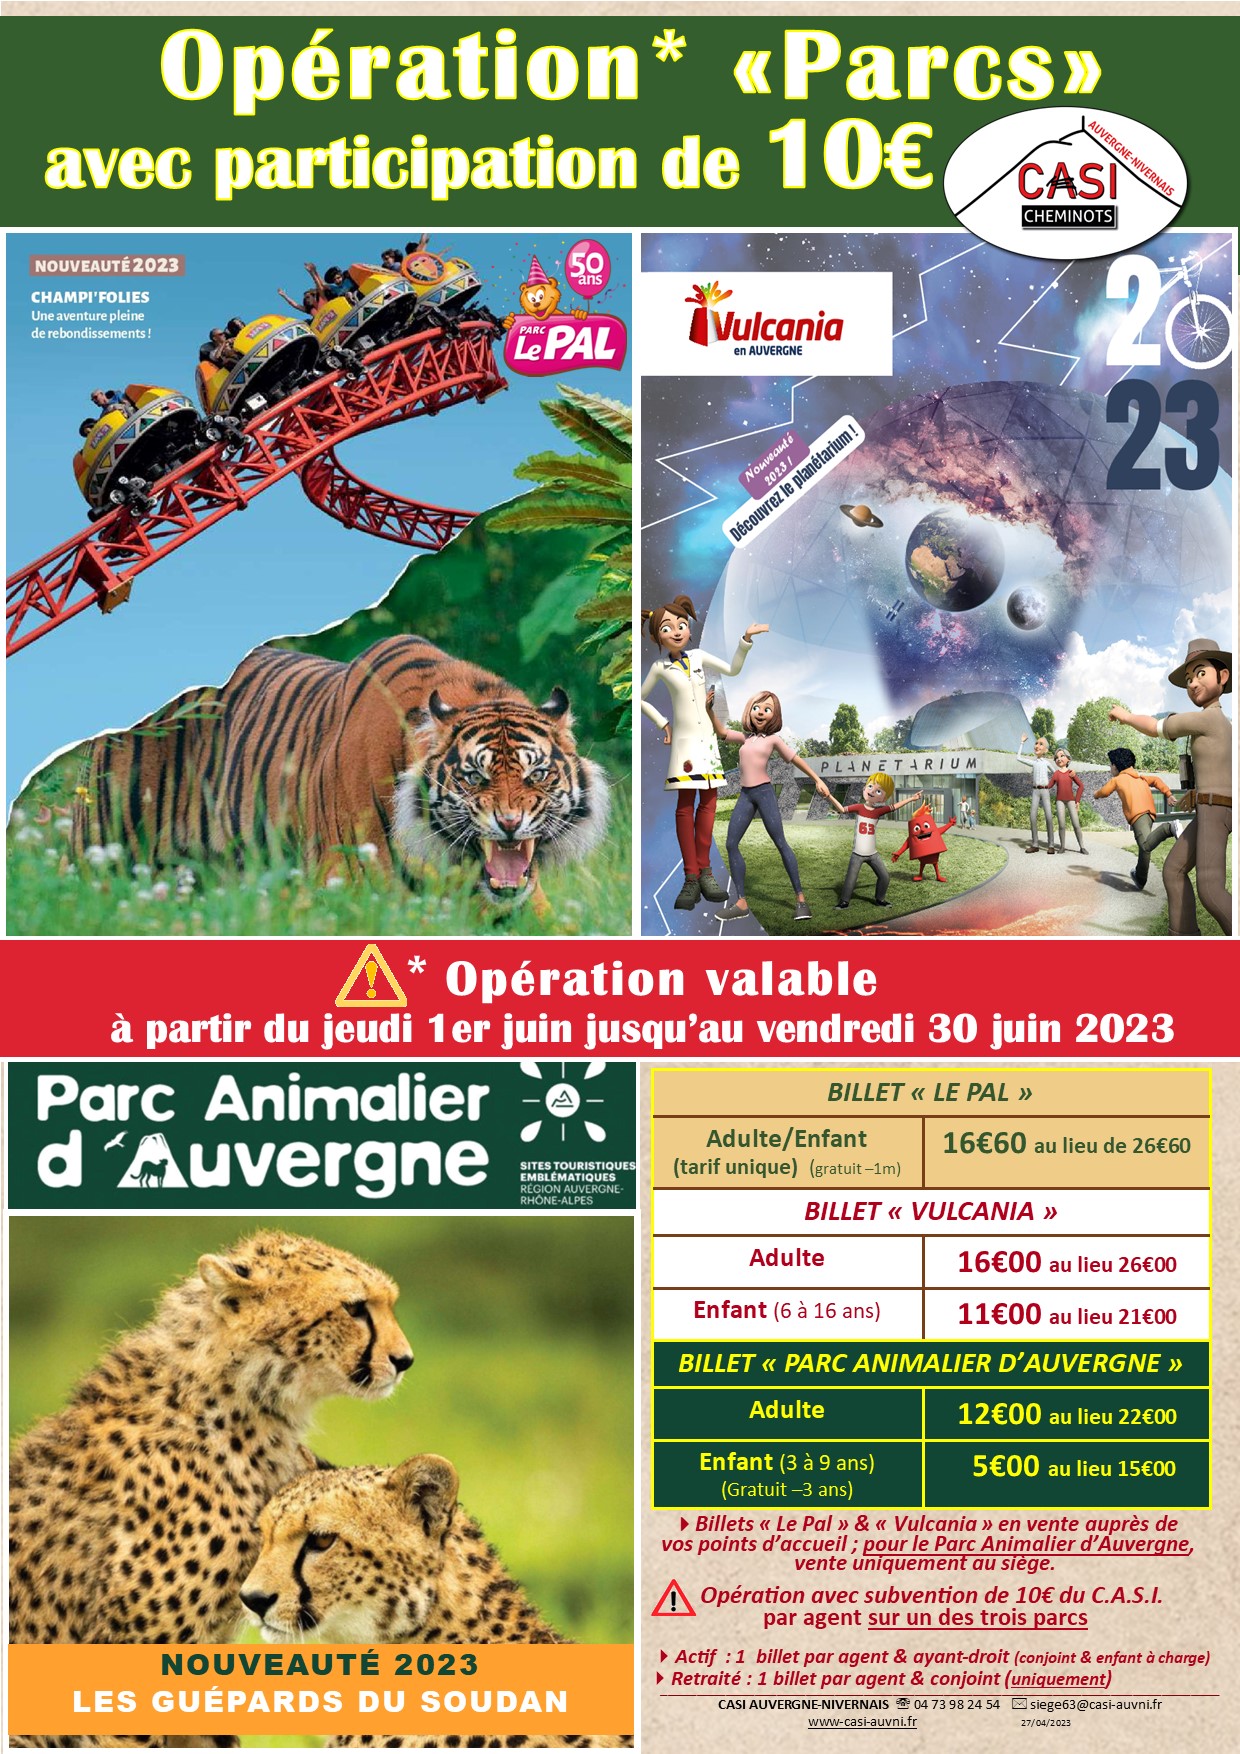 2023 Affiche Opération Parcs Le Pal Parc Animalier Auvergne Vulcania